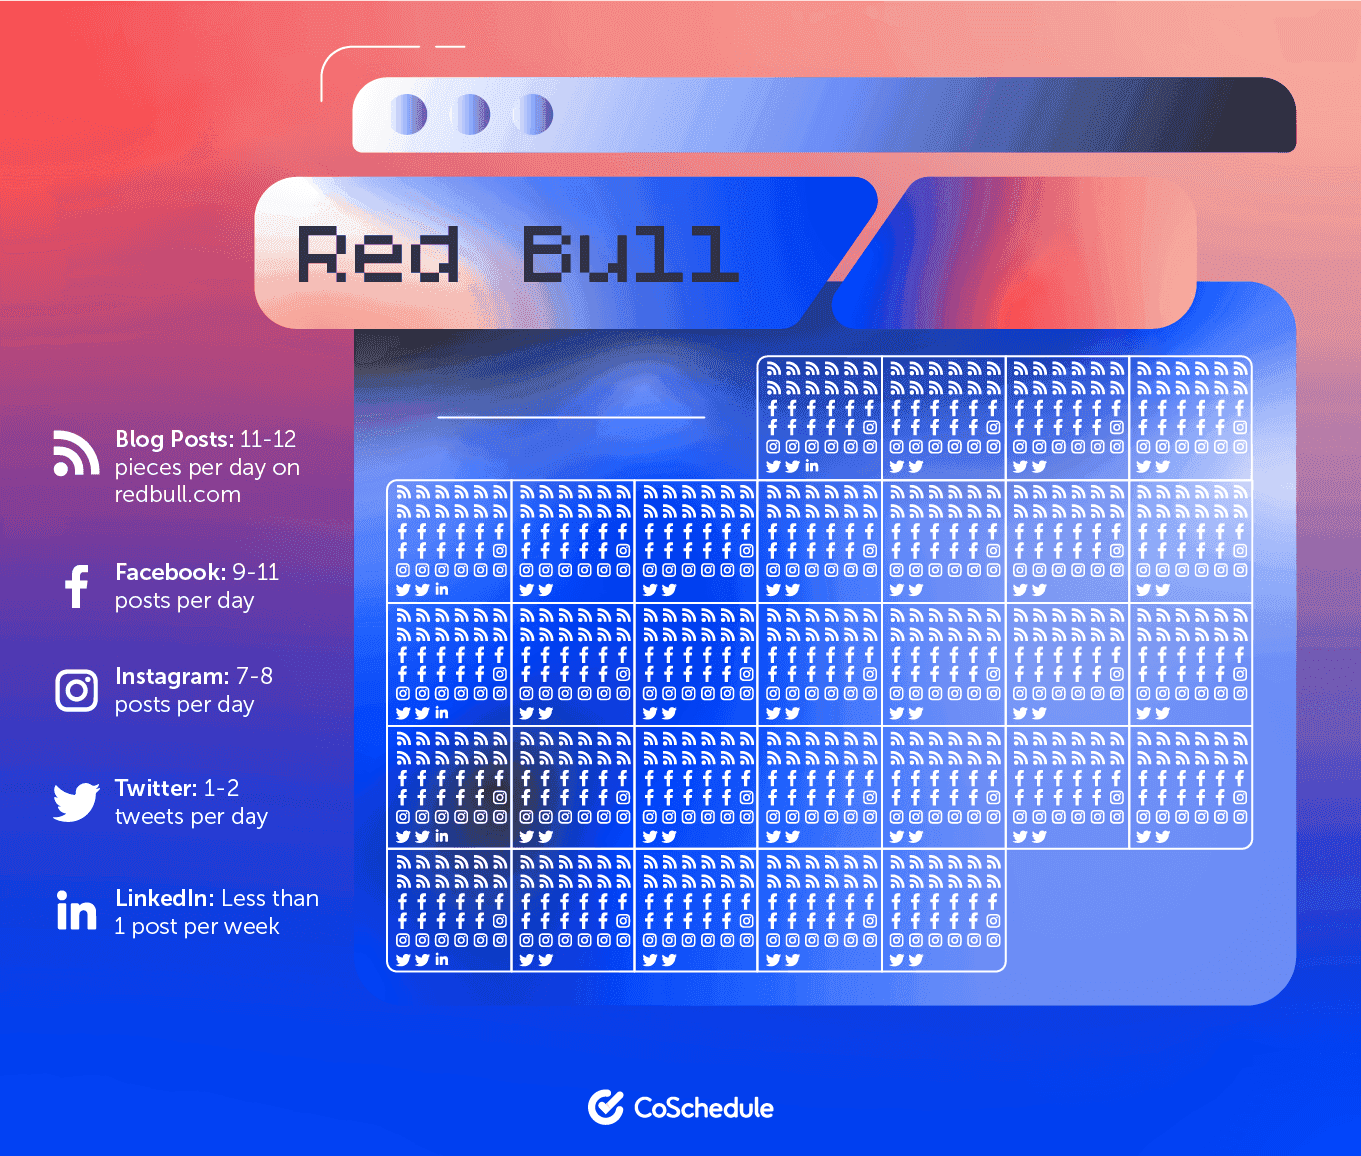 Redbull's content calendar